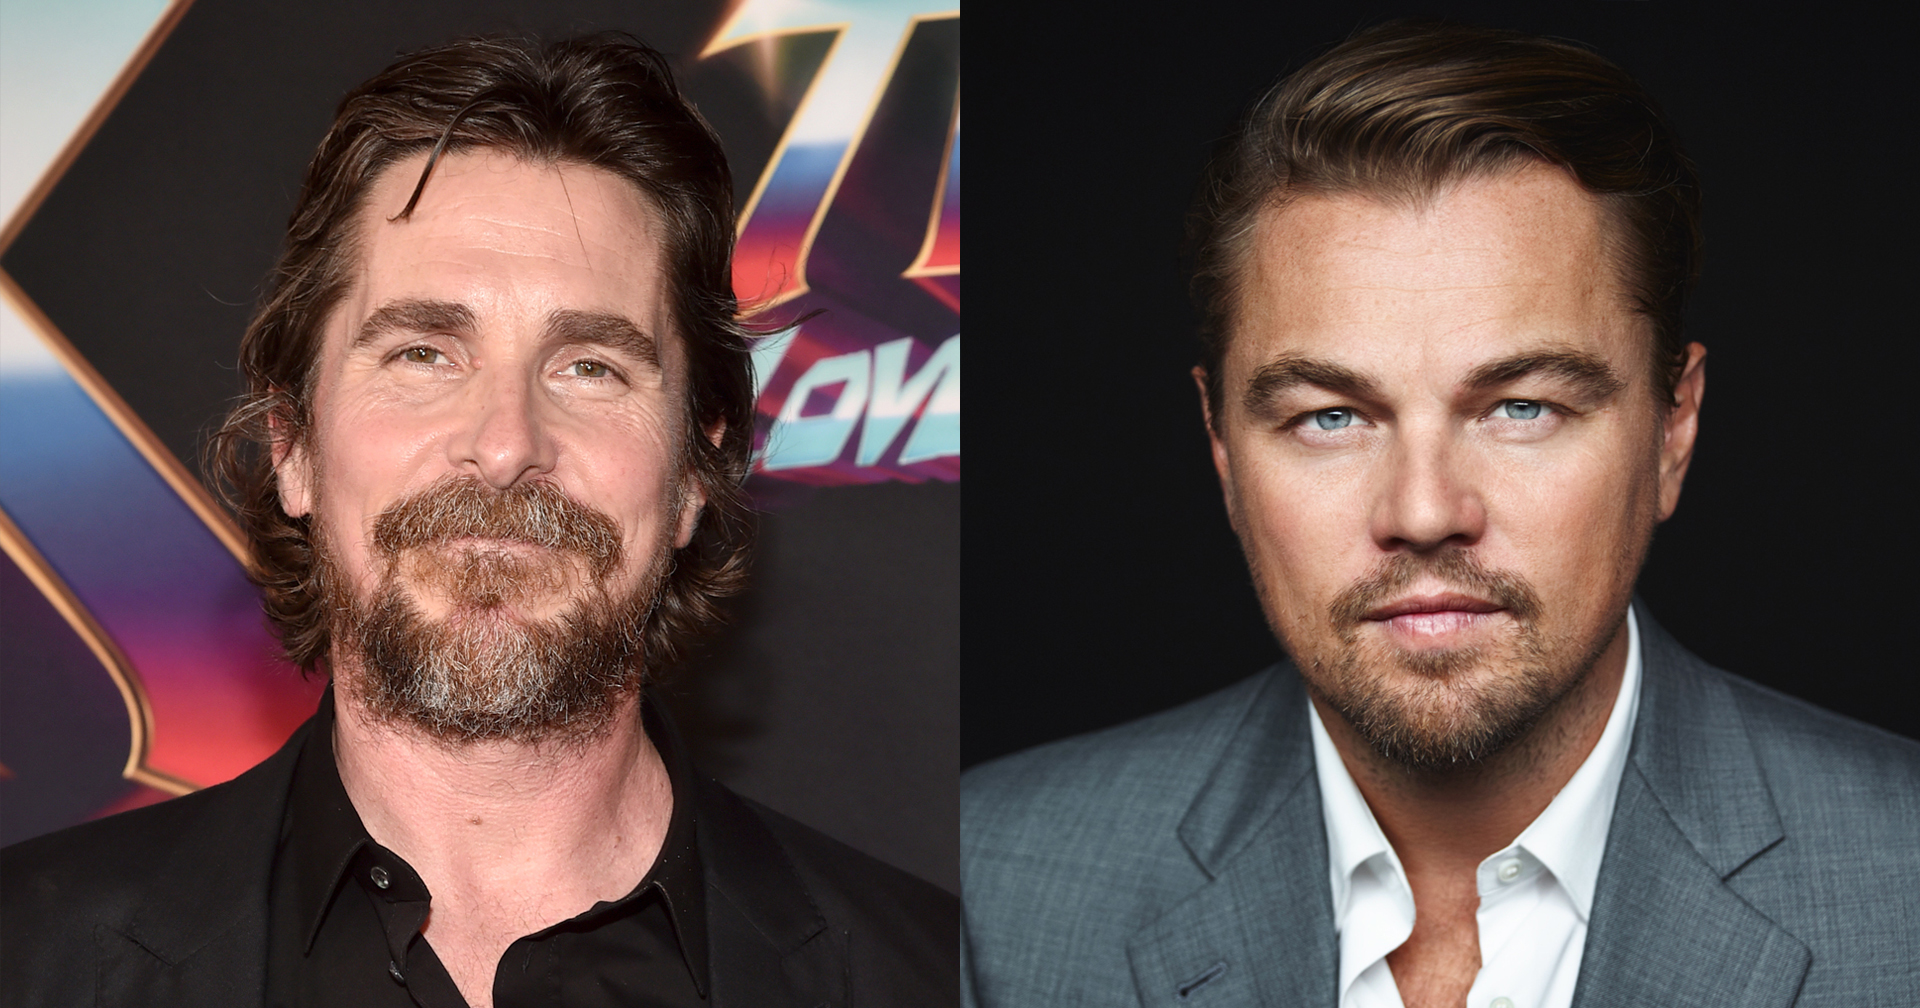 Christian Bale ขอบคุณ Leonardo DiCaprio ที่ปฏิเสธงาน จนทำให้ได้แจ้งเกิด